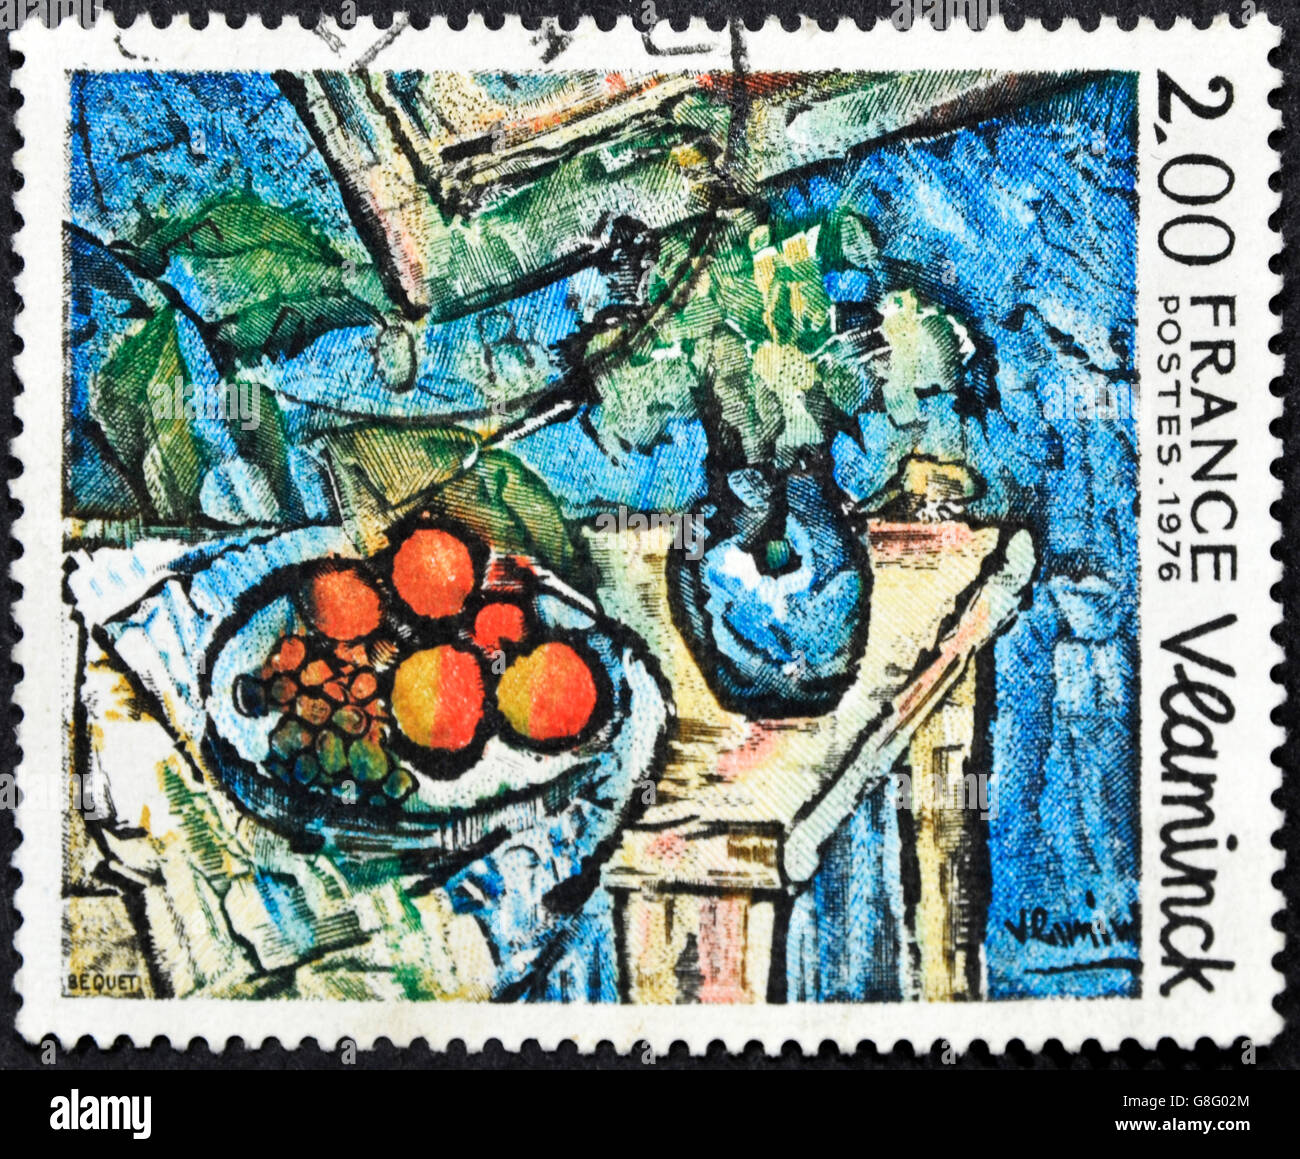 Frankreich - ca. 1976: Eine Briefmarke gedruckt in Frankreich zeigt das Stück "Still Life", gemalt von Maurice De Vlaminck, ca. 1976 Stockfoto